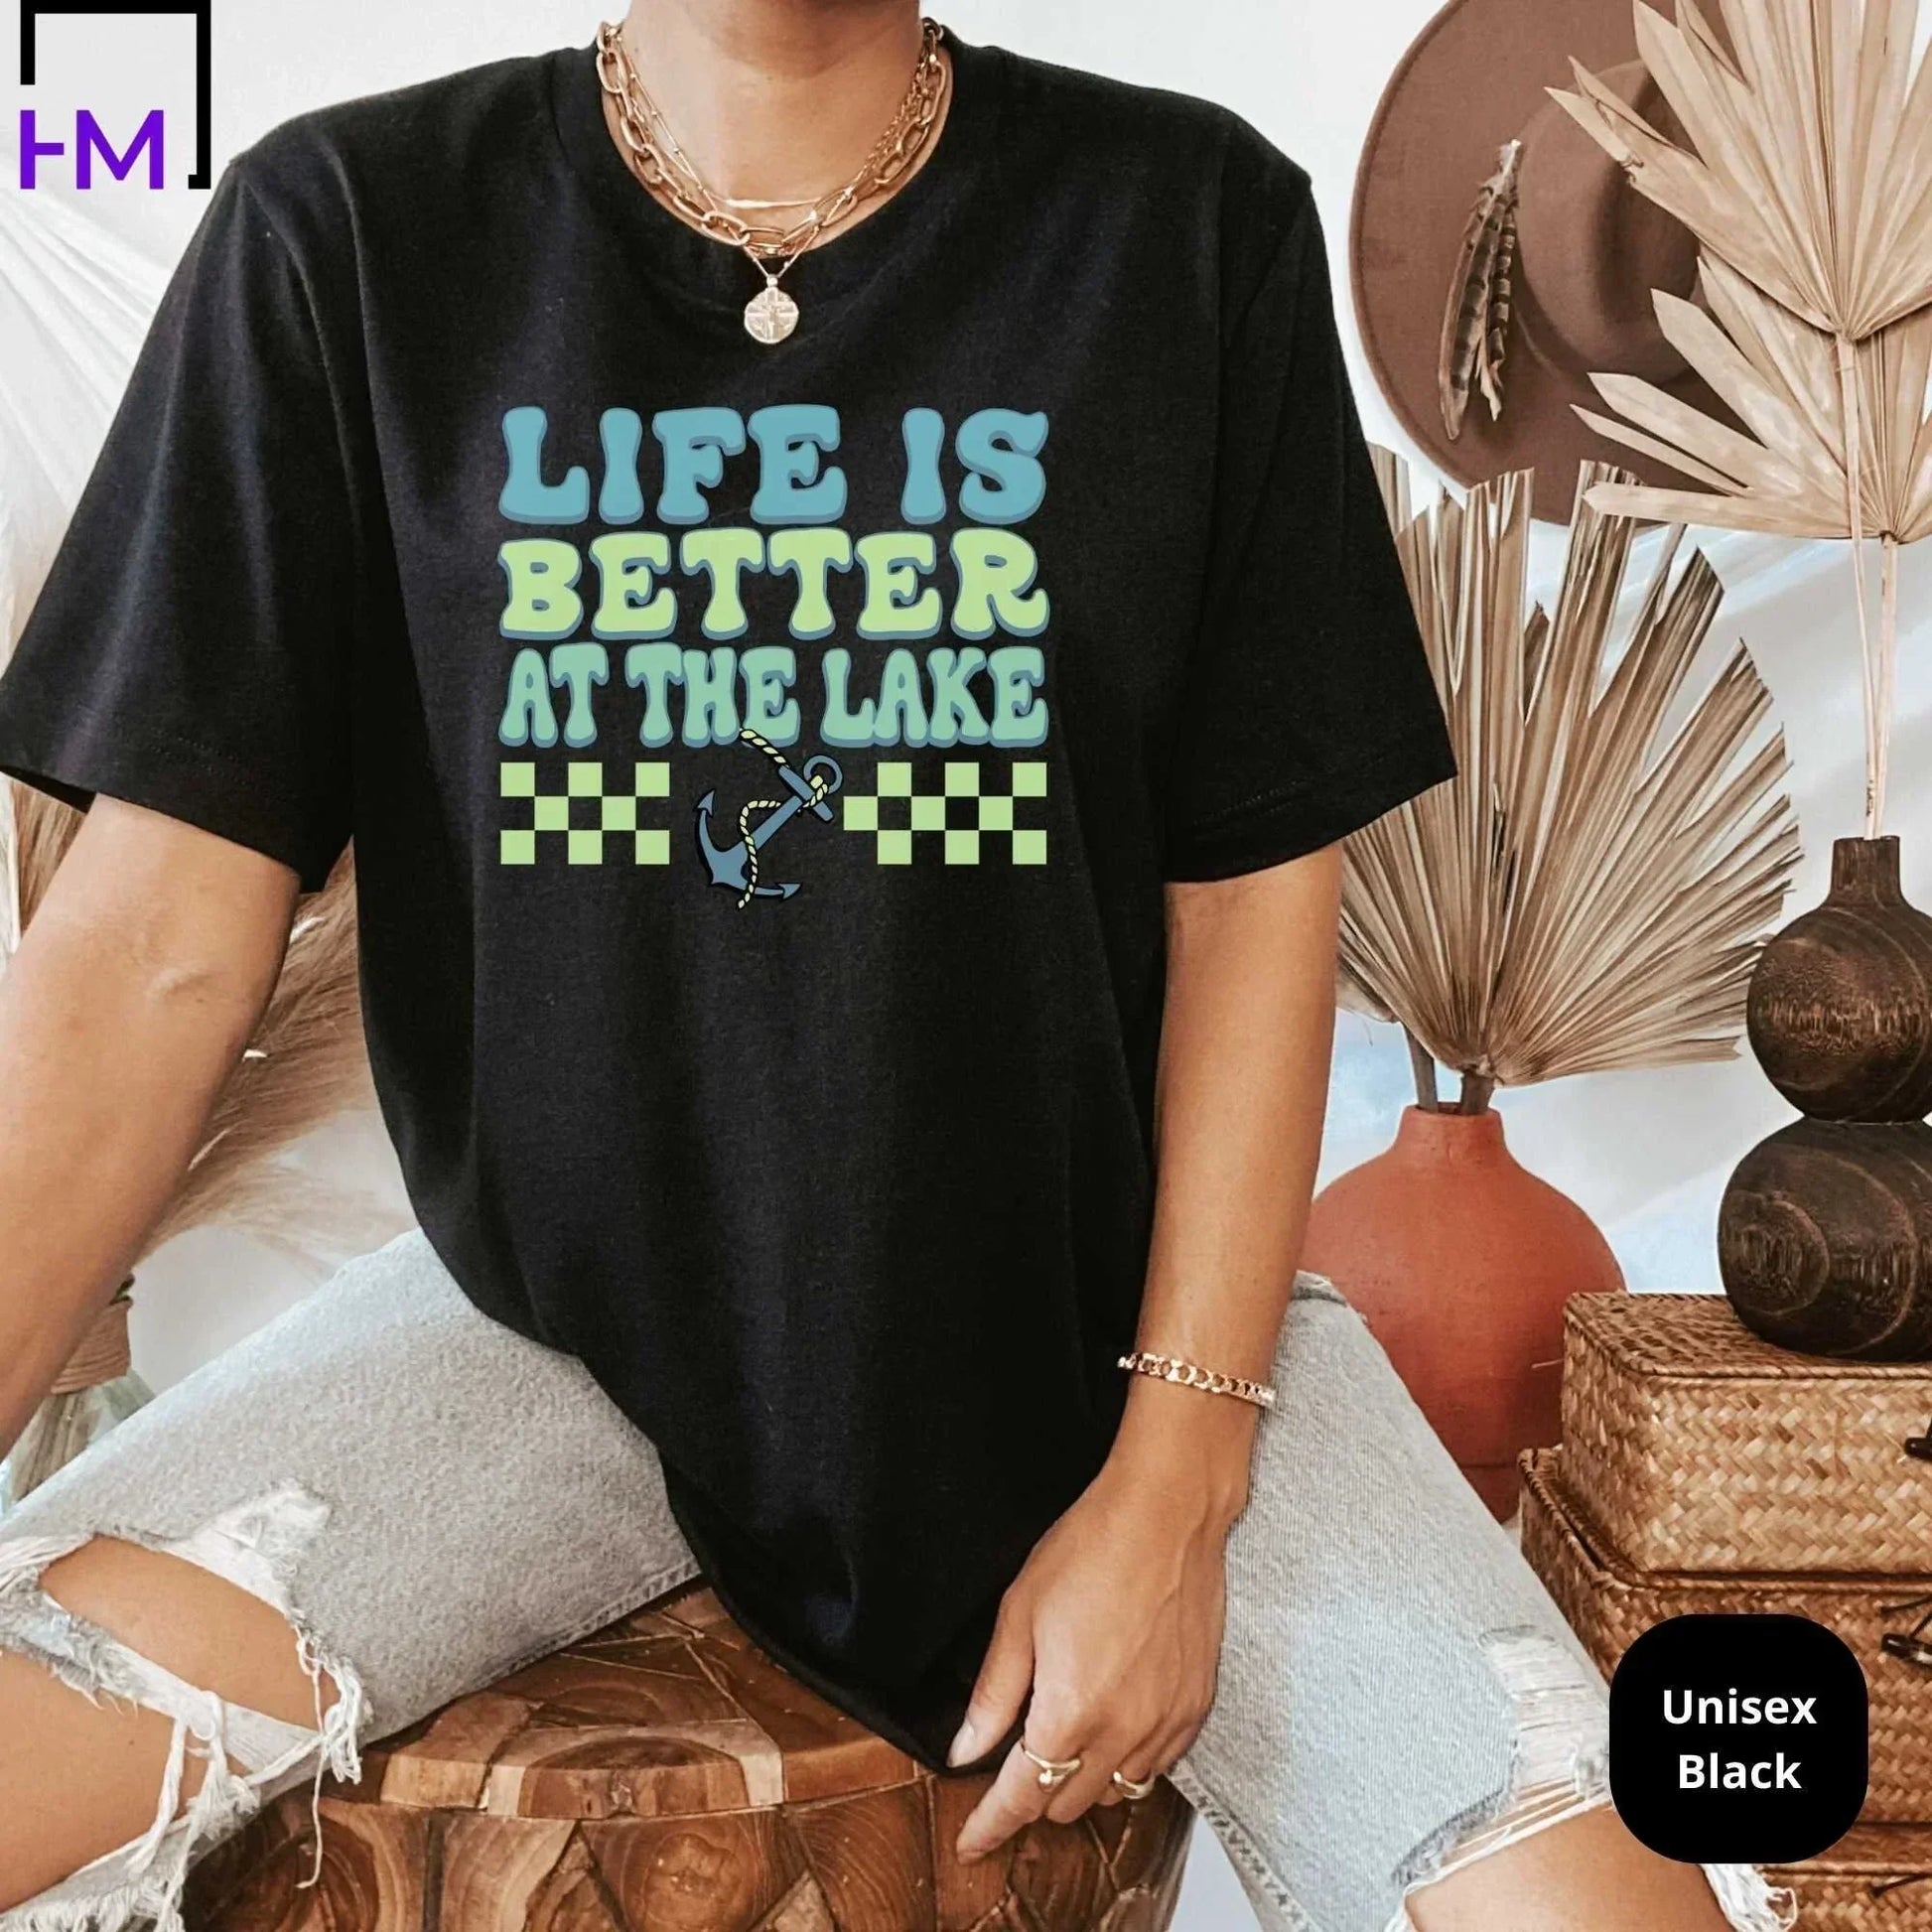 Lake Life Shirt, Lake Trip Shirts for Girls, Gift for Lake Lovers, Girls Trip Shirts, Summer Shirt for Women, Boating Shirt, Kayaking Shirt HMDesignStudioUS